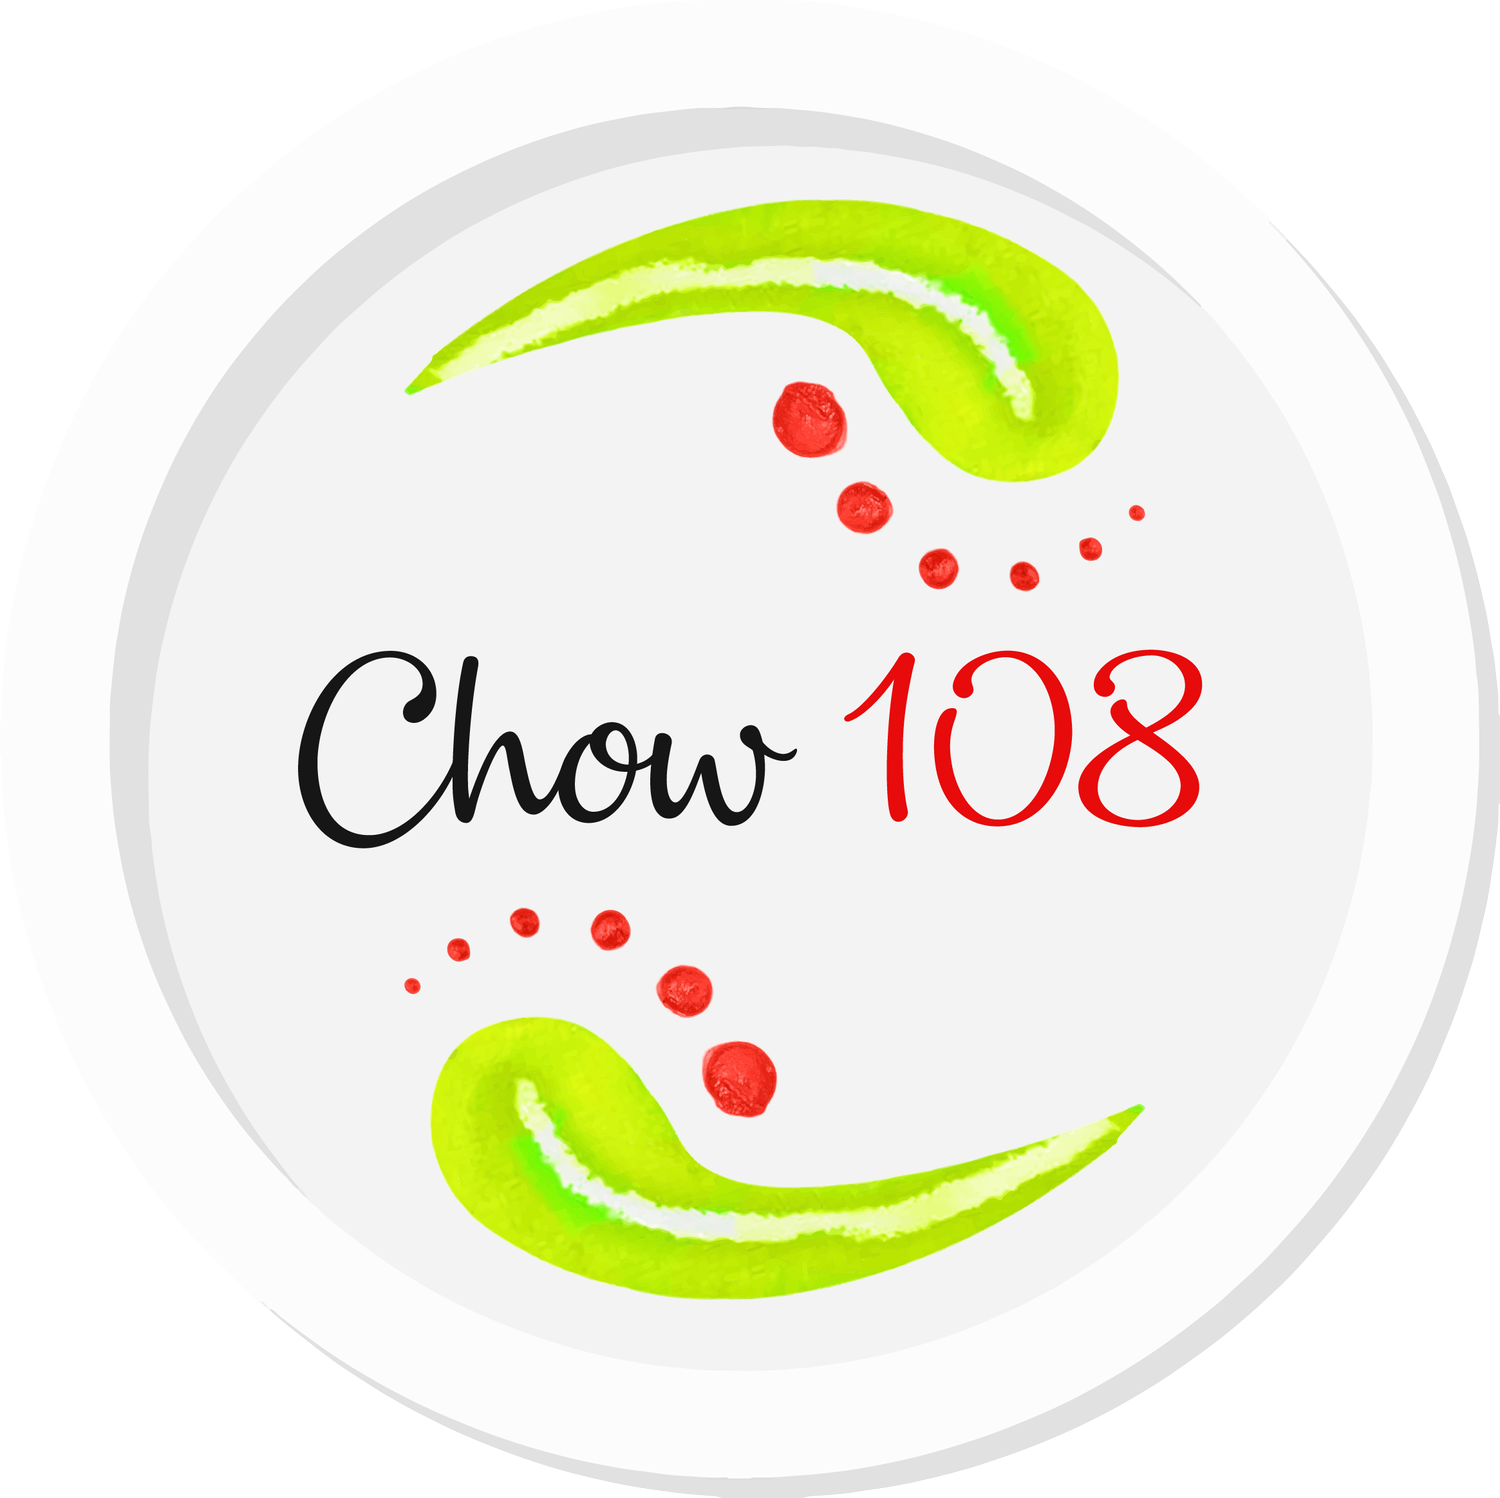 Chow 108 Cuisine